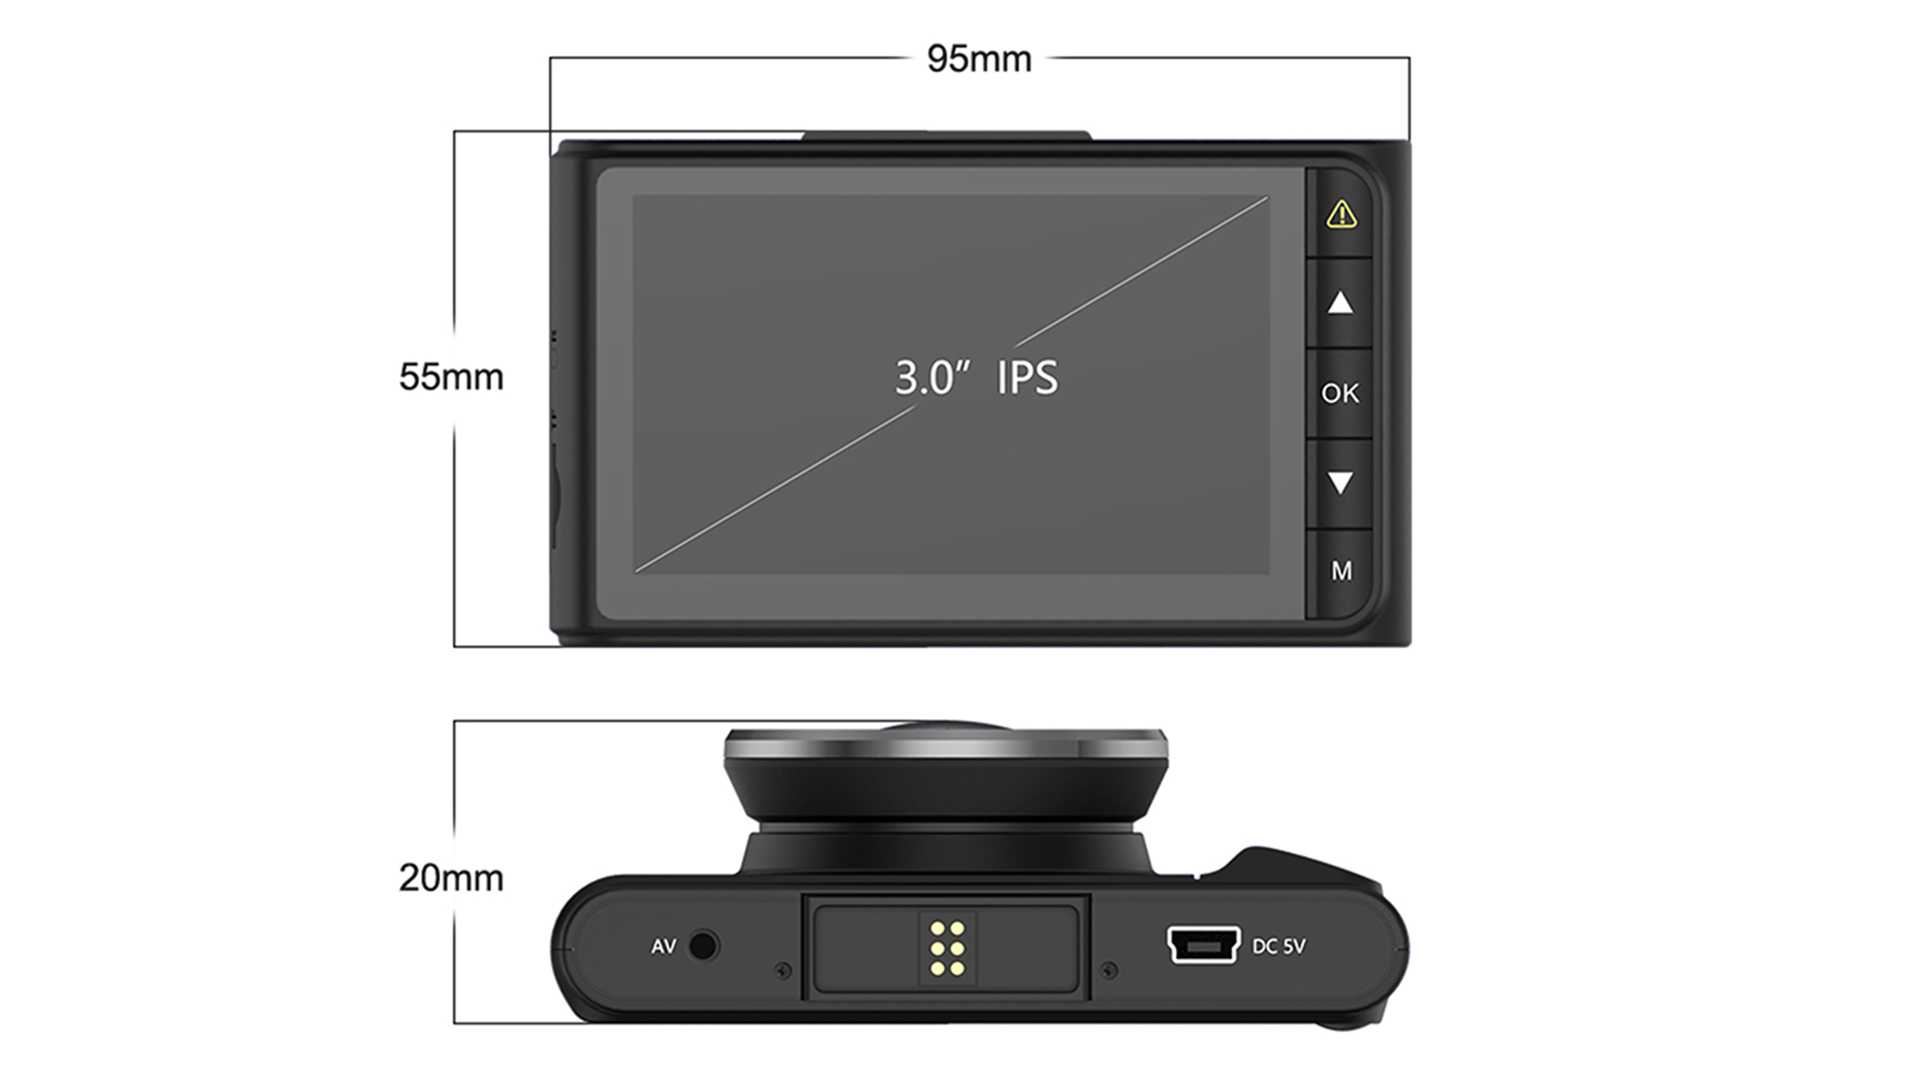 Планшет Aspiring M7010 - подробные характеристики обзоры видео фото Цены в интернет-магазинах где можно купить планшет Aspiring M7010